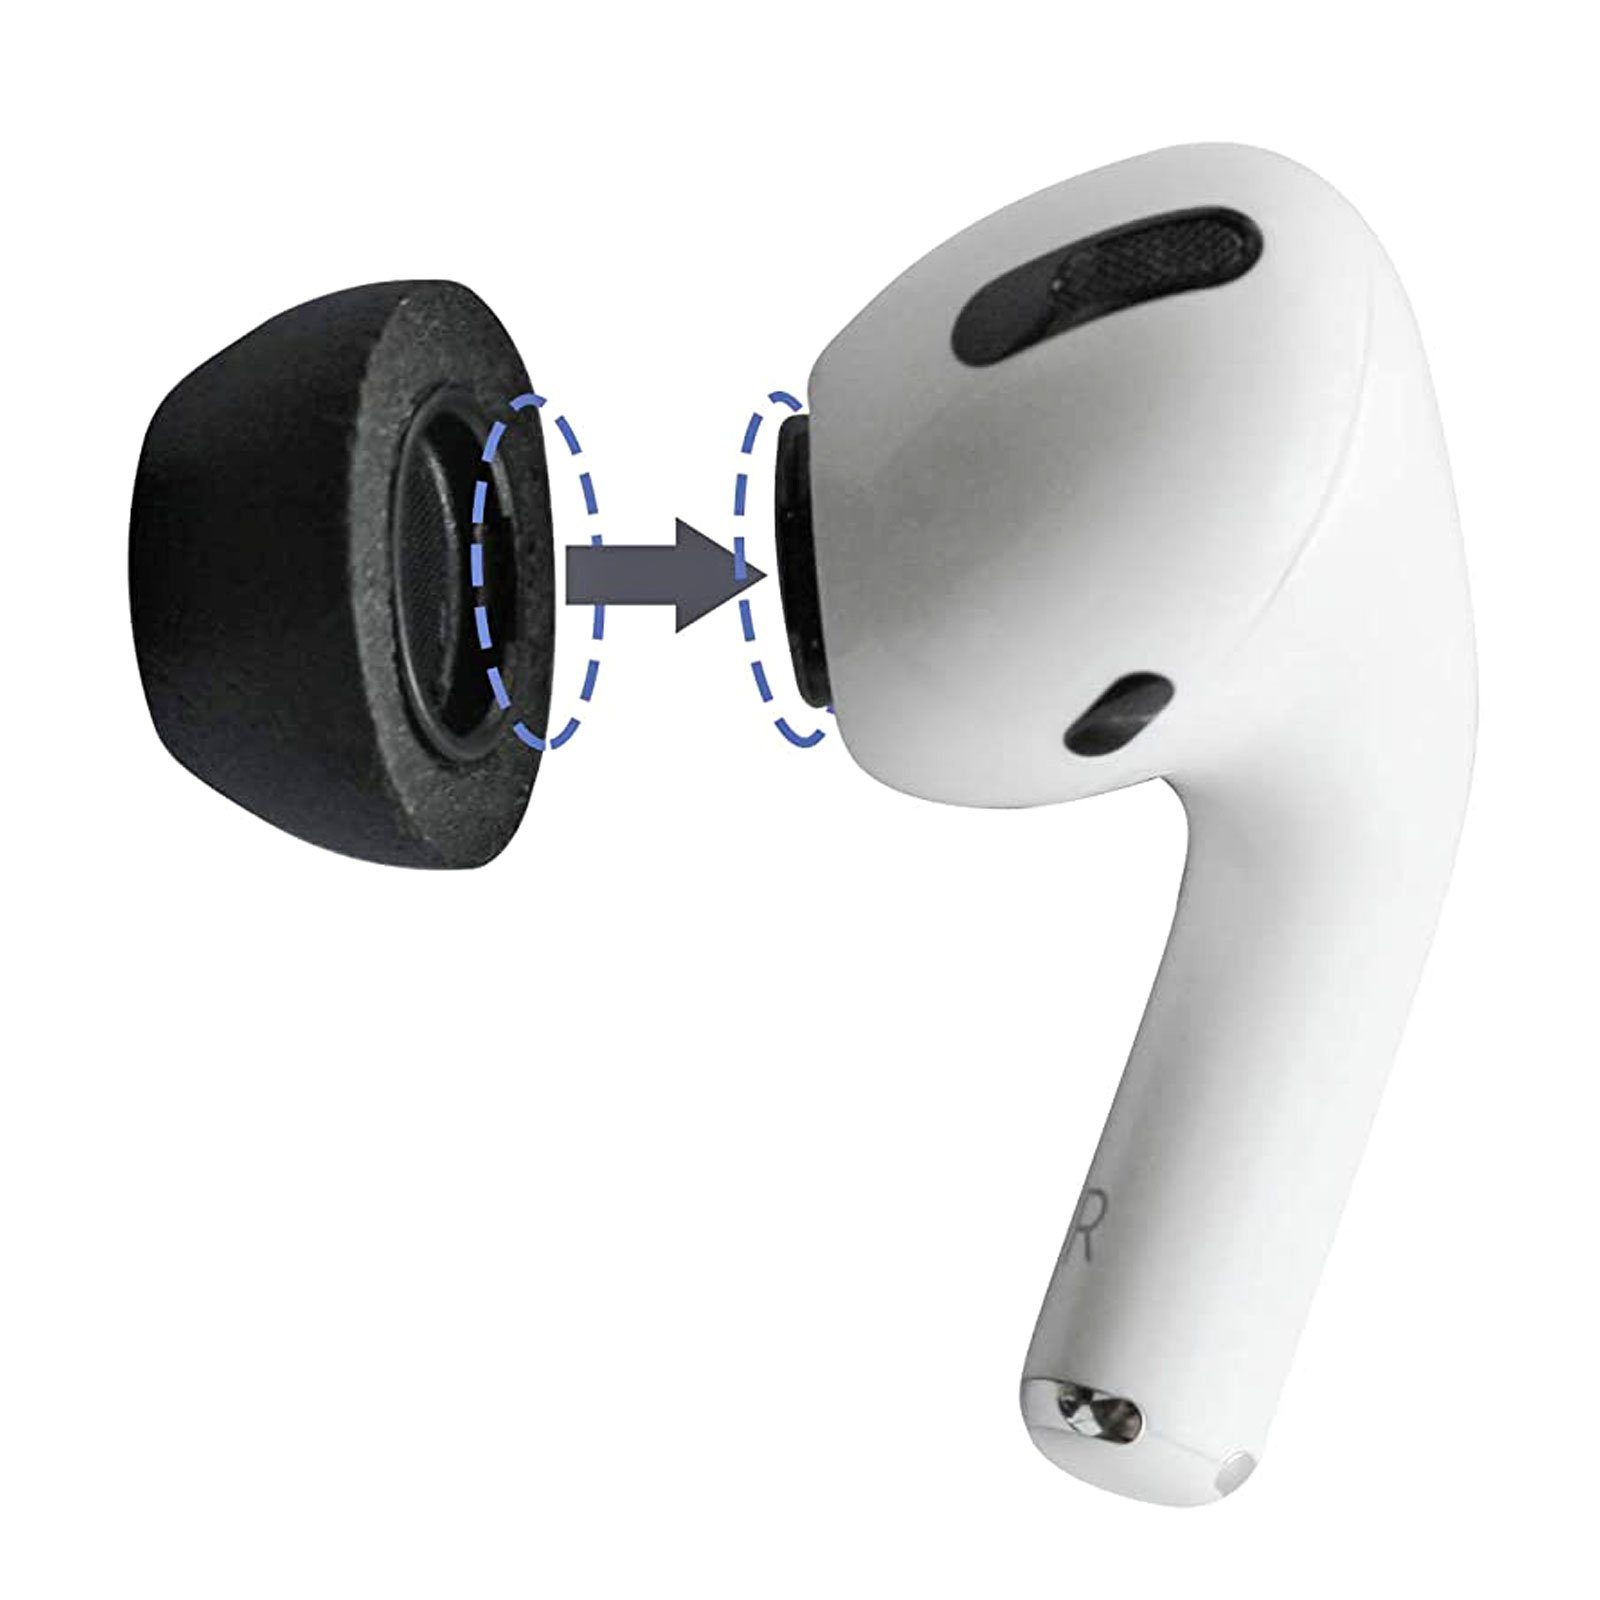 Schwarz 2.0 AirPods Pro Sicherer In-Ear-Kopfhörer für (Größe Sitz, Tragekomfort) Comply L, Ohrstöpsel Hoher